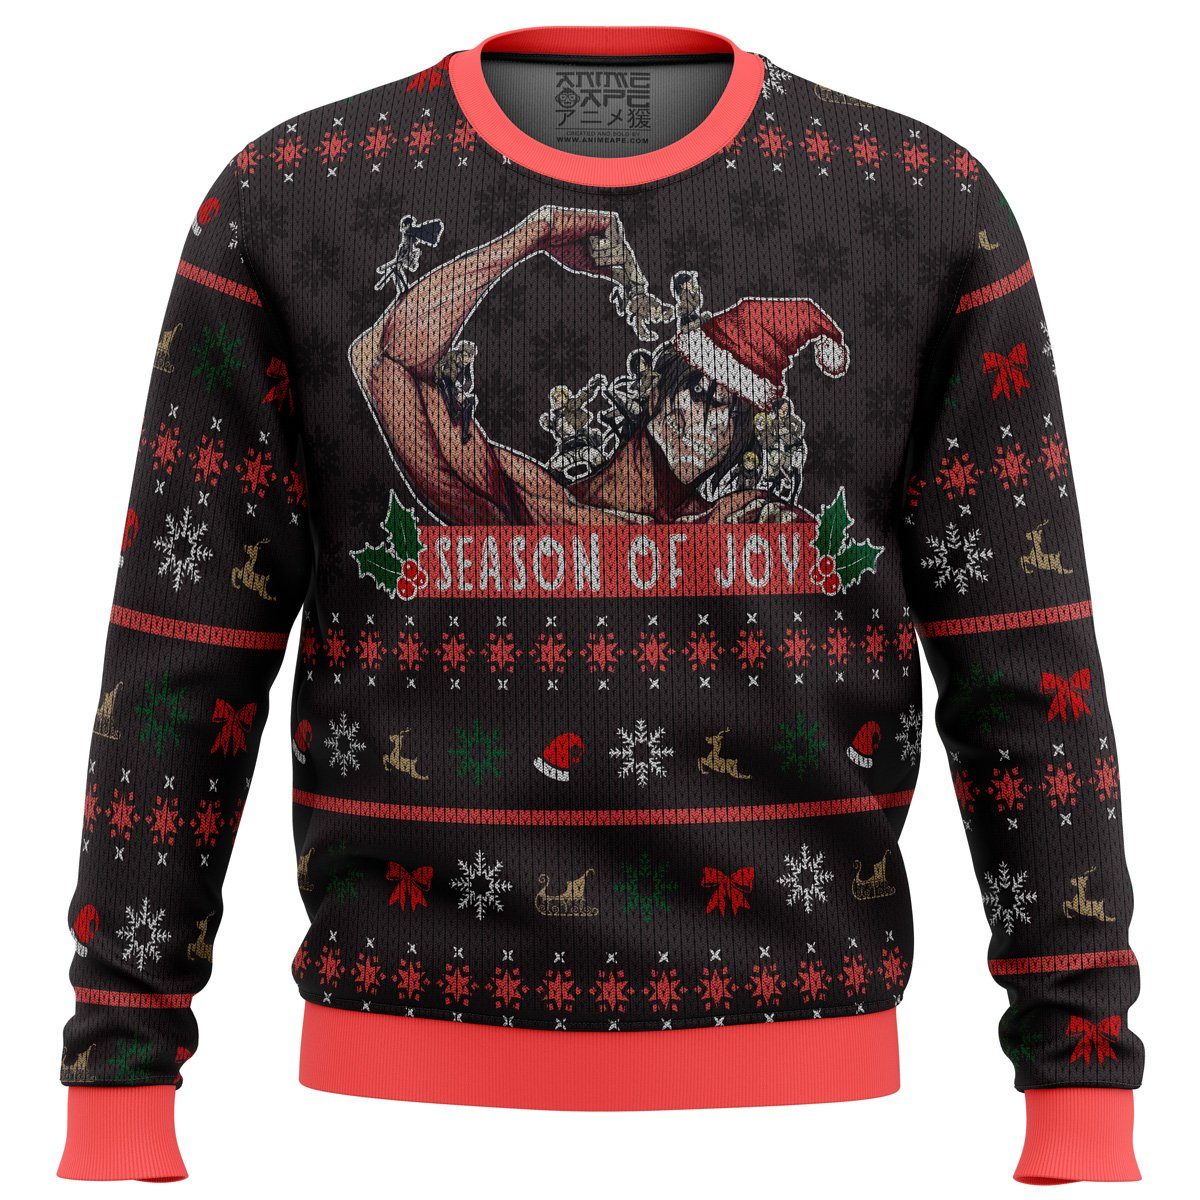 Season of Joy Attack on Titan Premium Ugly Christmas Sweater - Attack On Titan Stuff AS2111